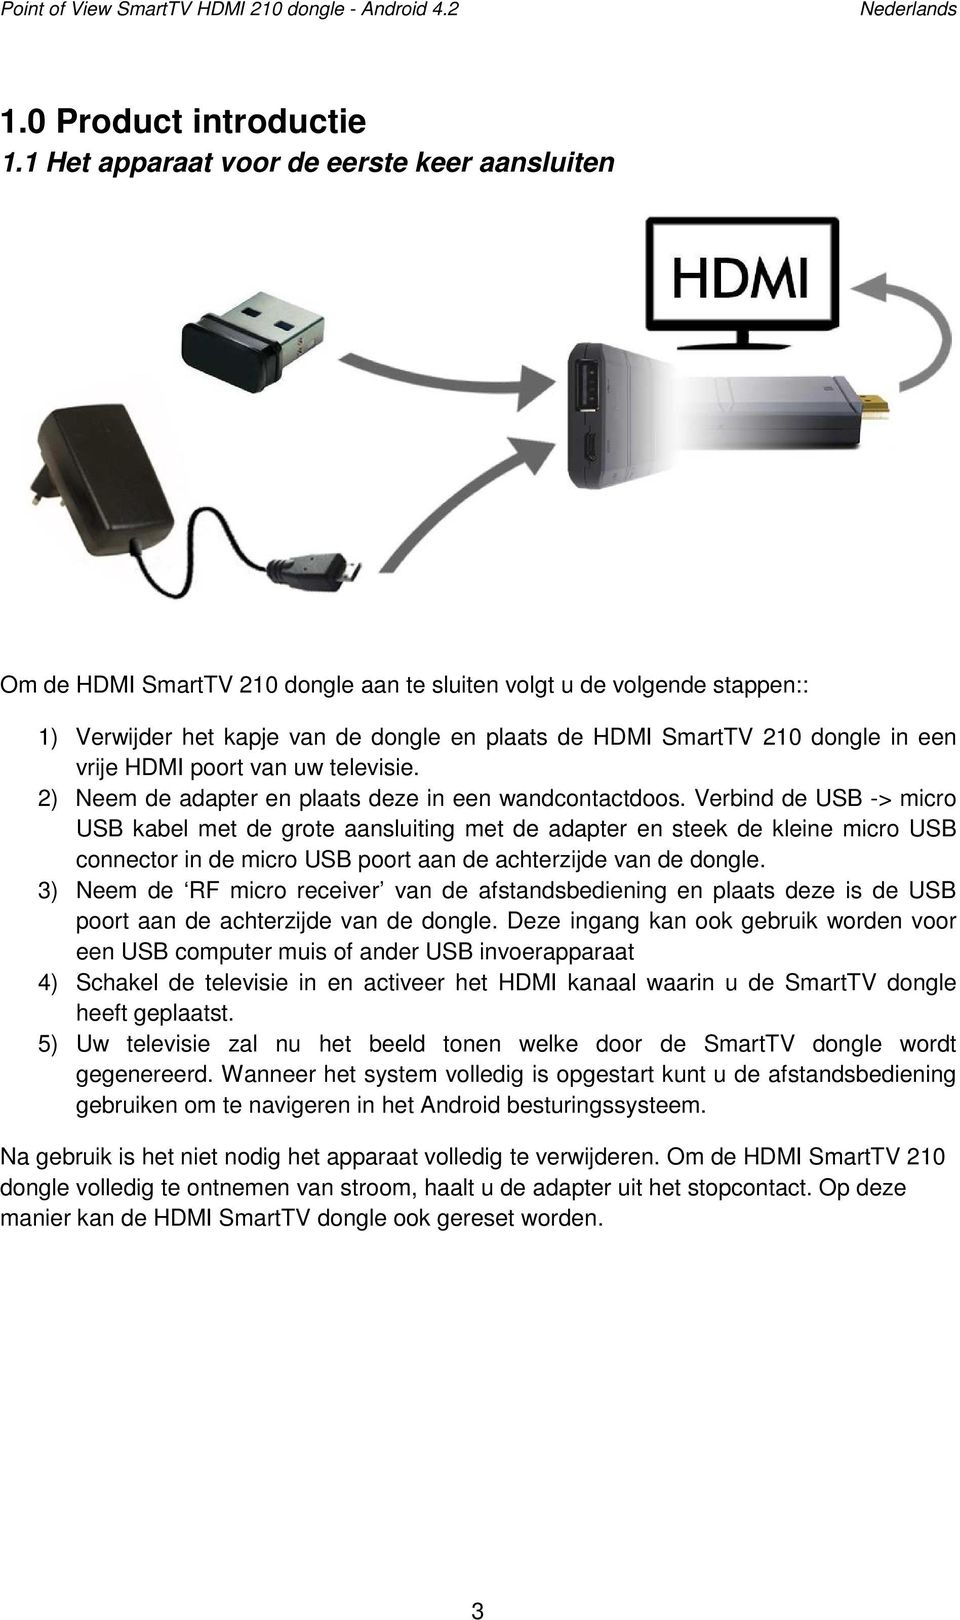 een vrije HDMI poort van uw televisie. 2) Neem de adapter en plaats deze in een wandcontactdoos.